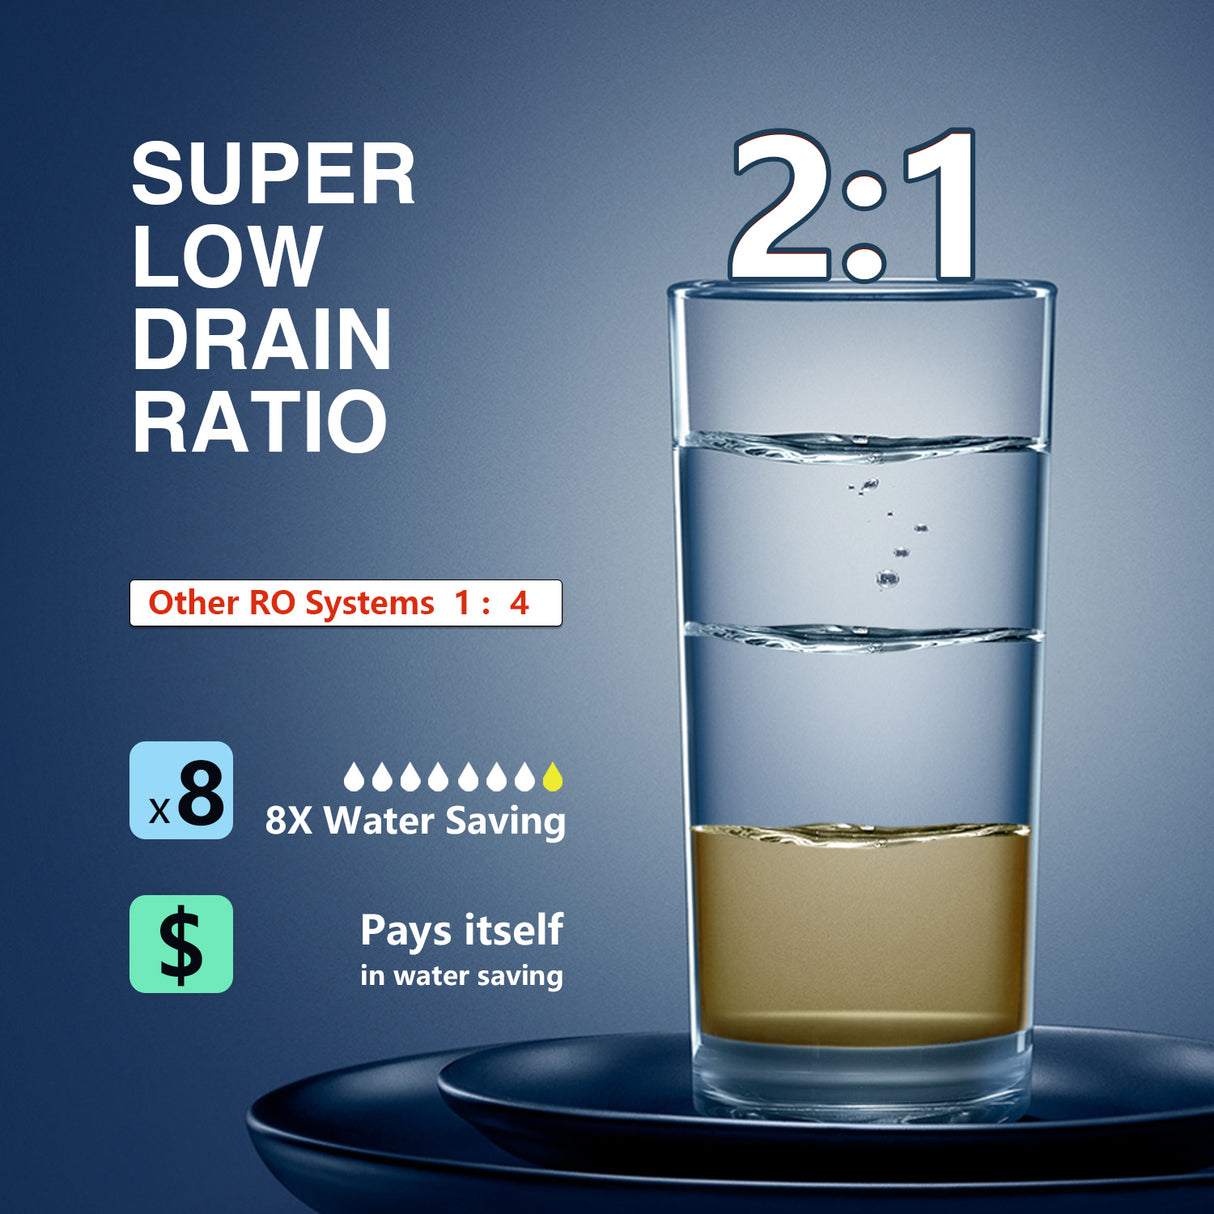 Super low drain ratio